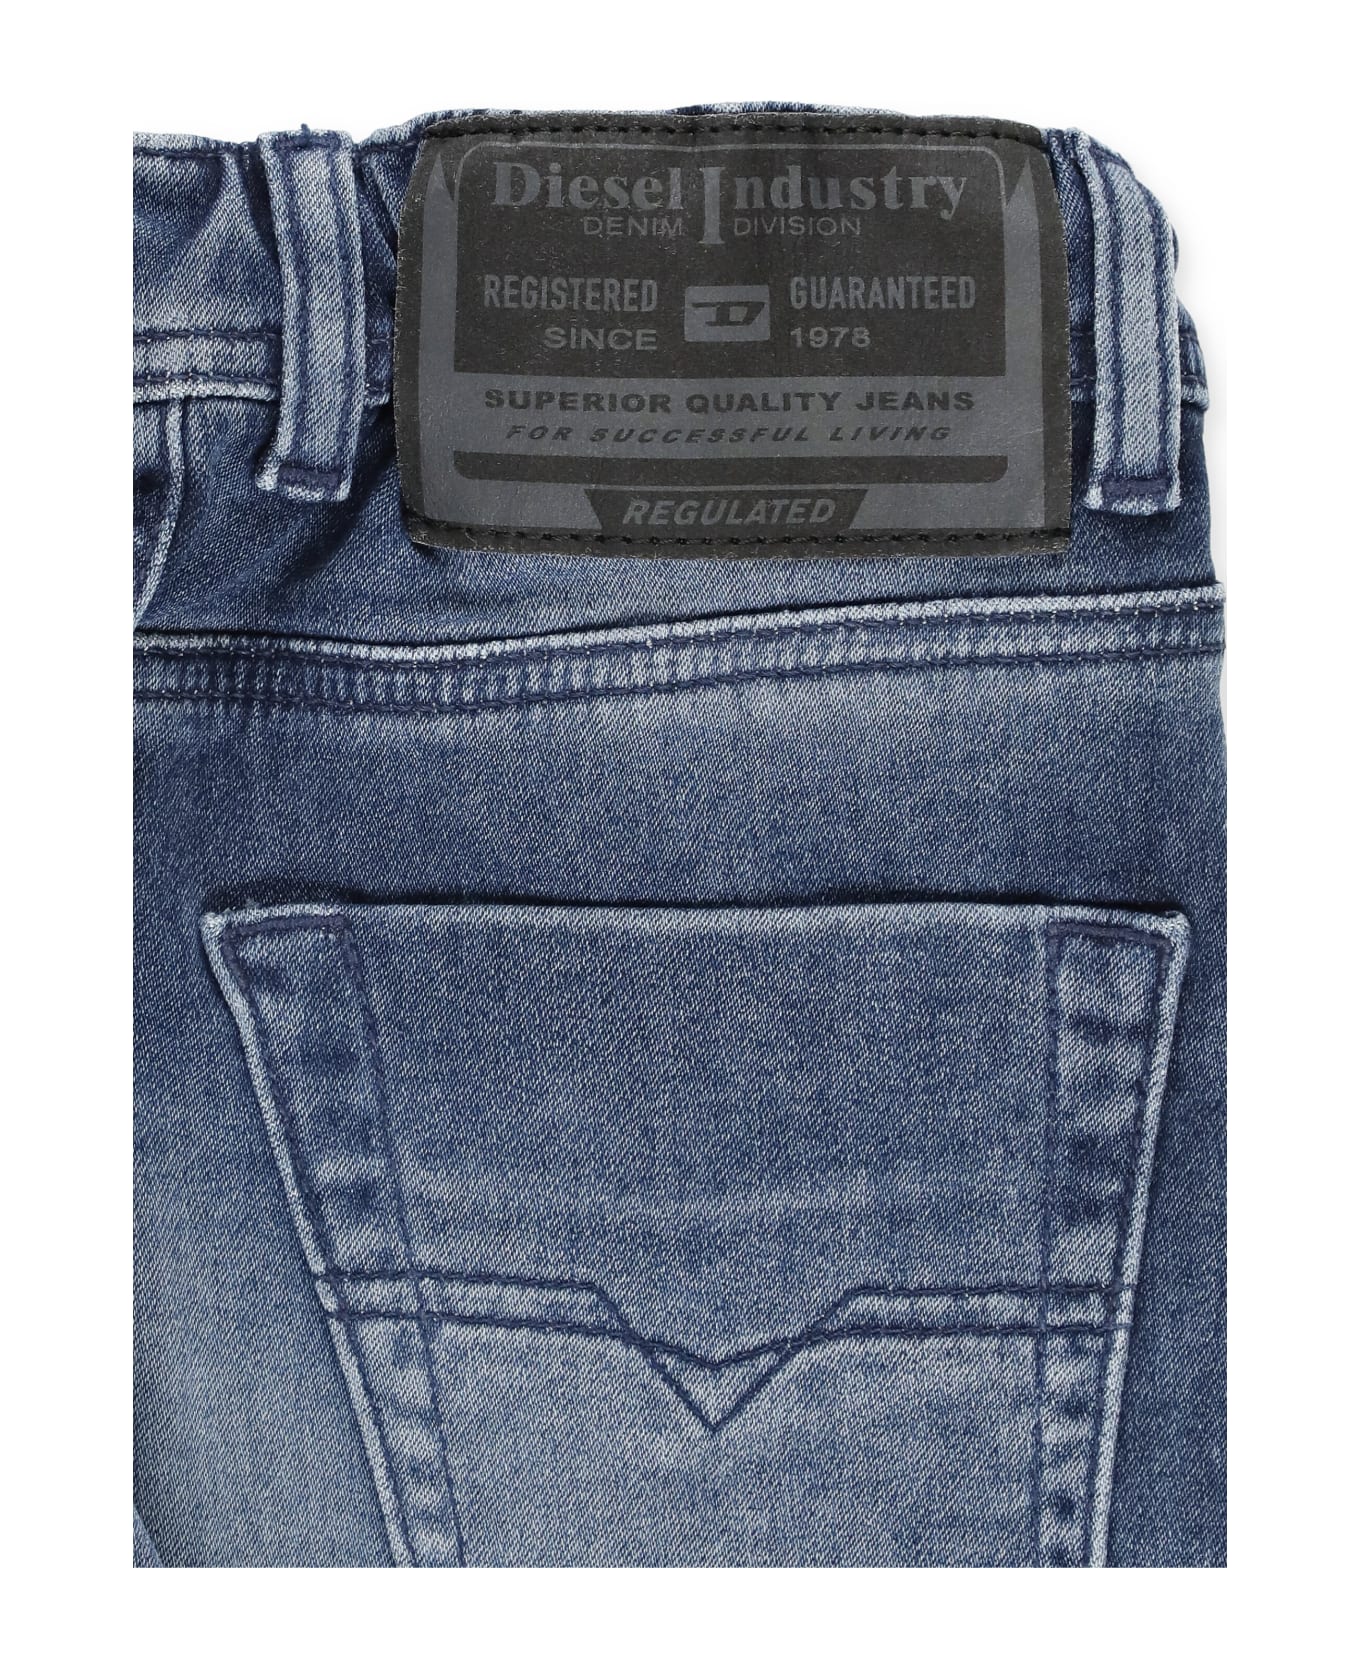 Diesel Denim Bermuda Shorts - Blue